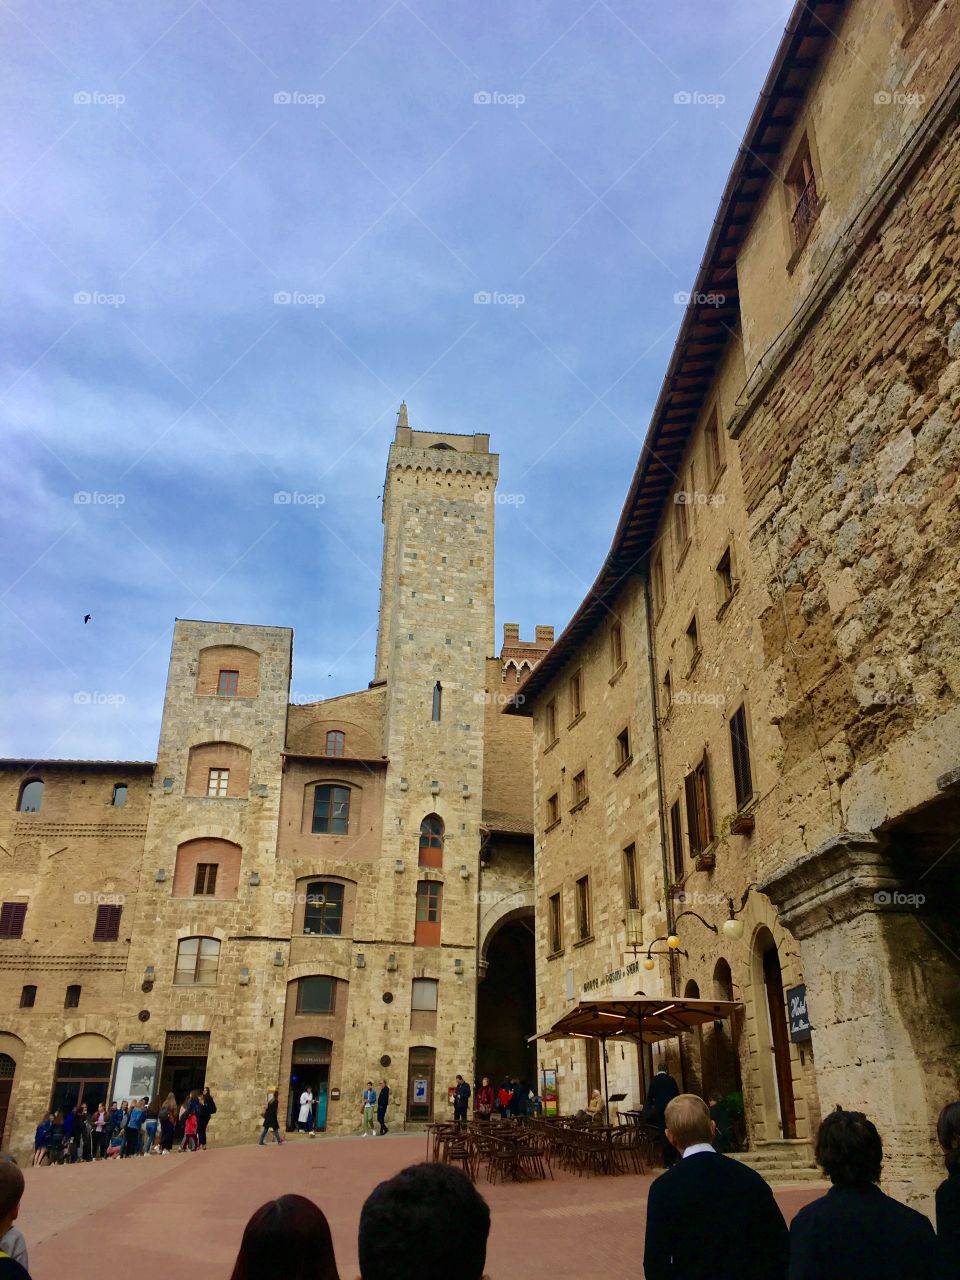 Ancien castle, Italy